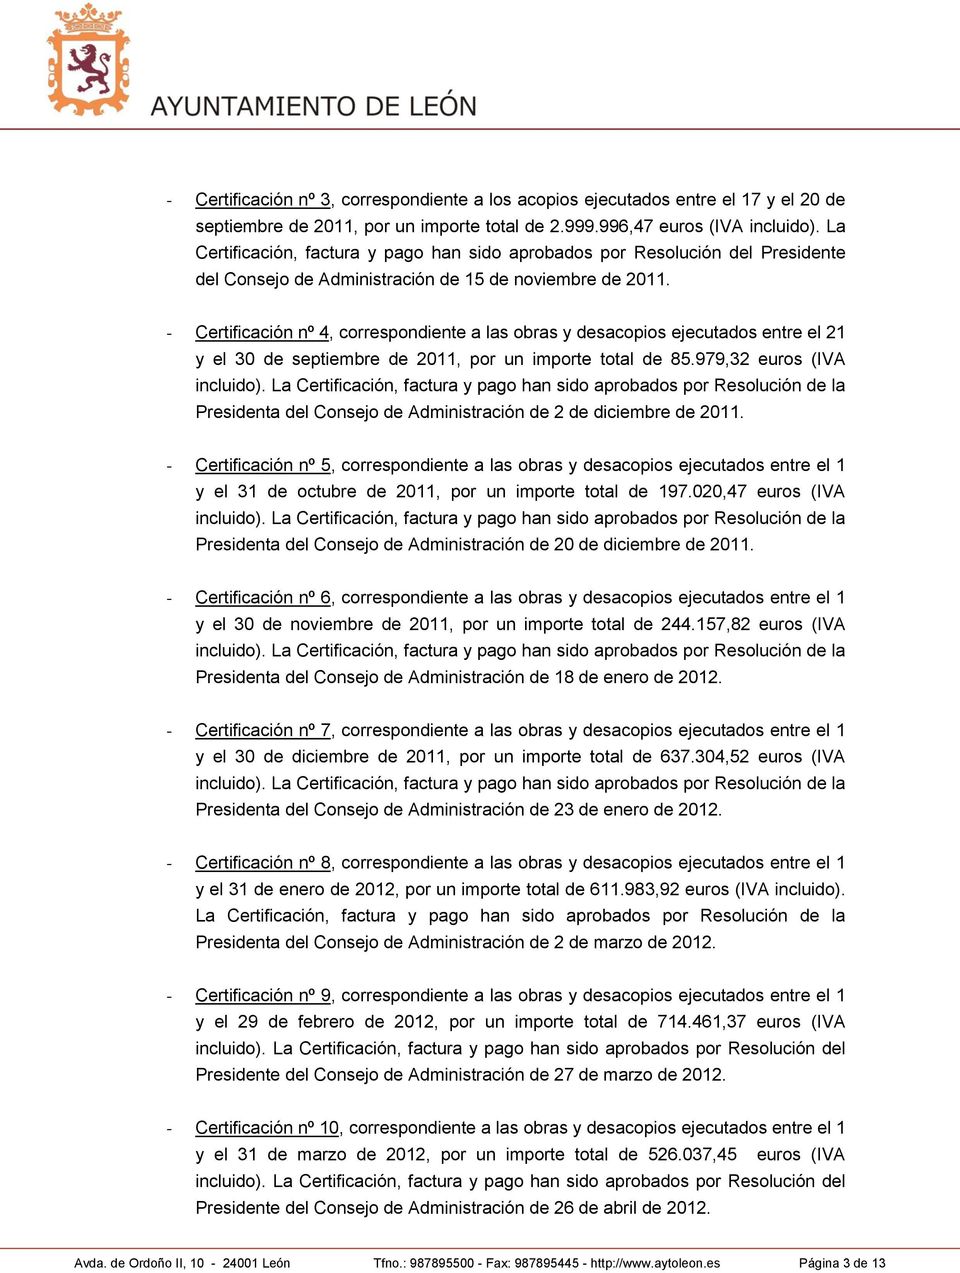 - Certificación nº 4, correspondiente a las obras y desacopios ejecutados entre el 21 y el 30 de septiembre de 2011, por un importe total de 85.979,32 euros (IVA incluido).